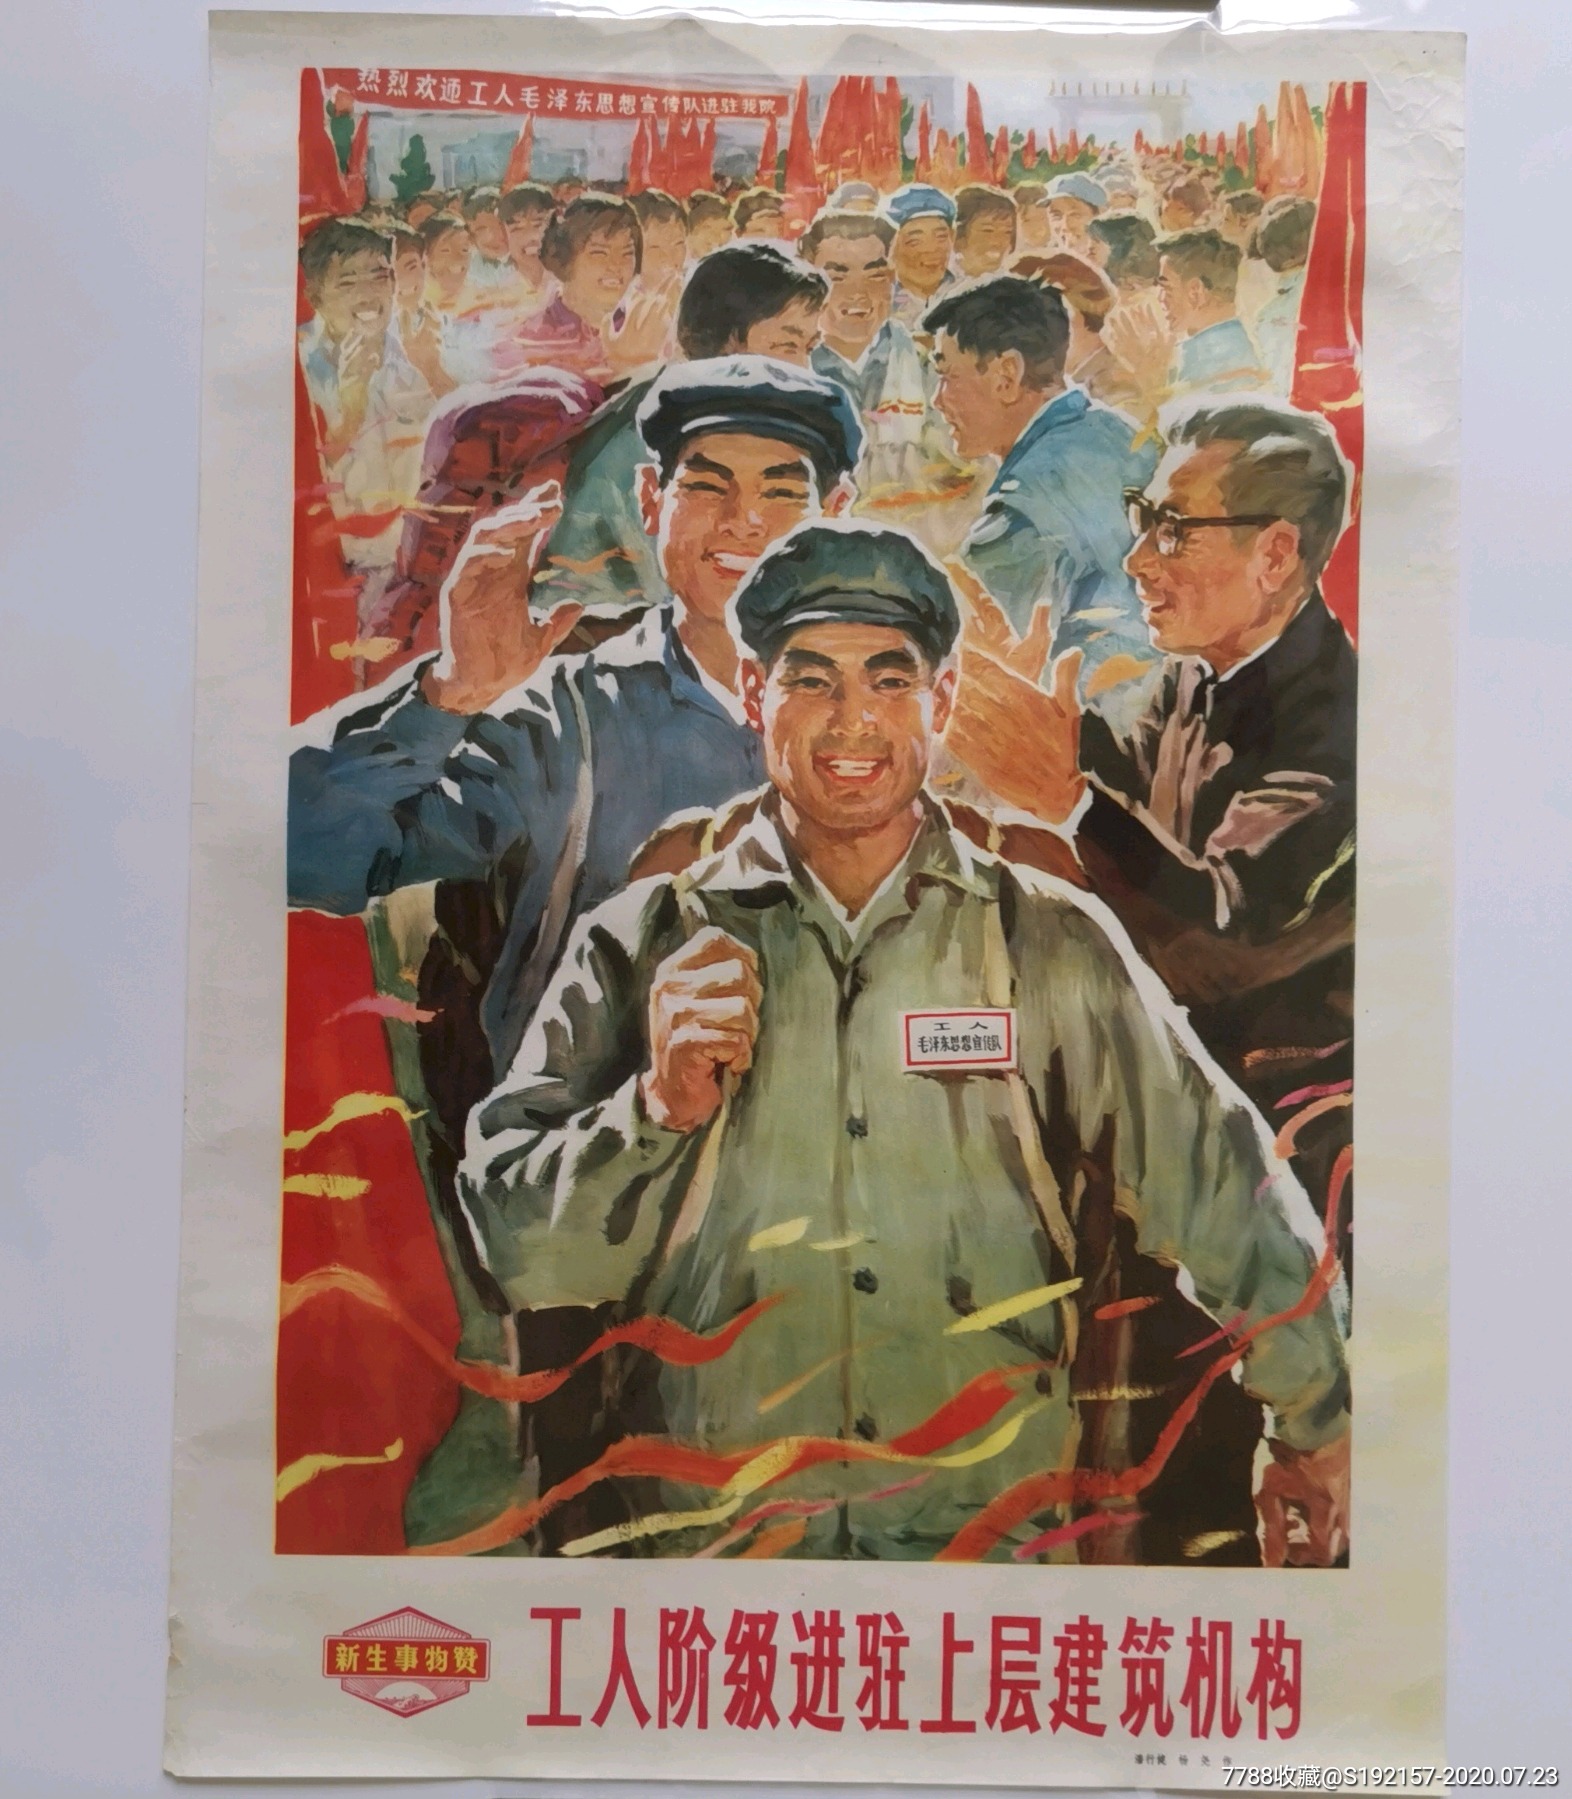 文革宣传画:《工人阶级进驻上层建筑机构》